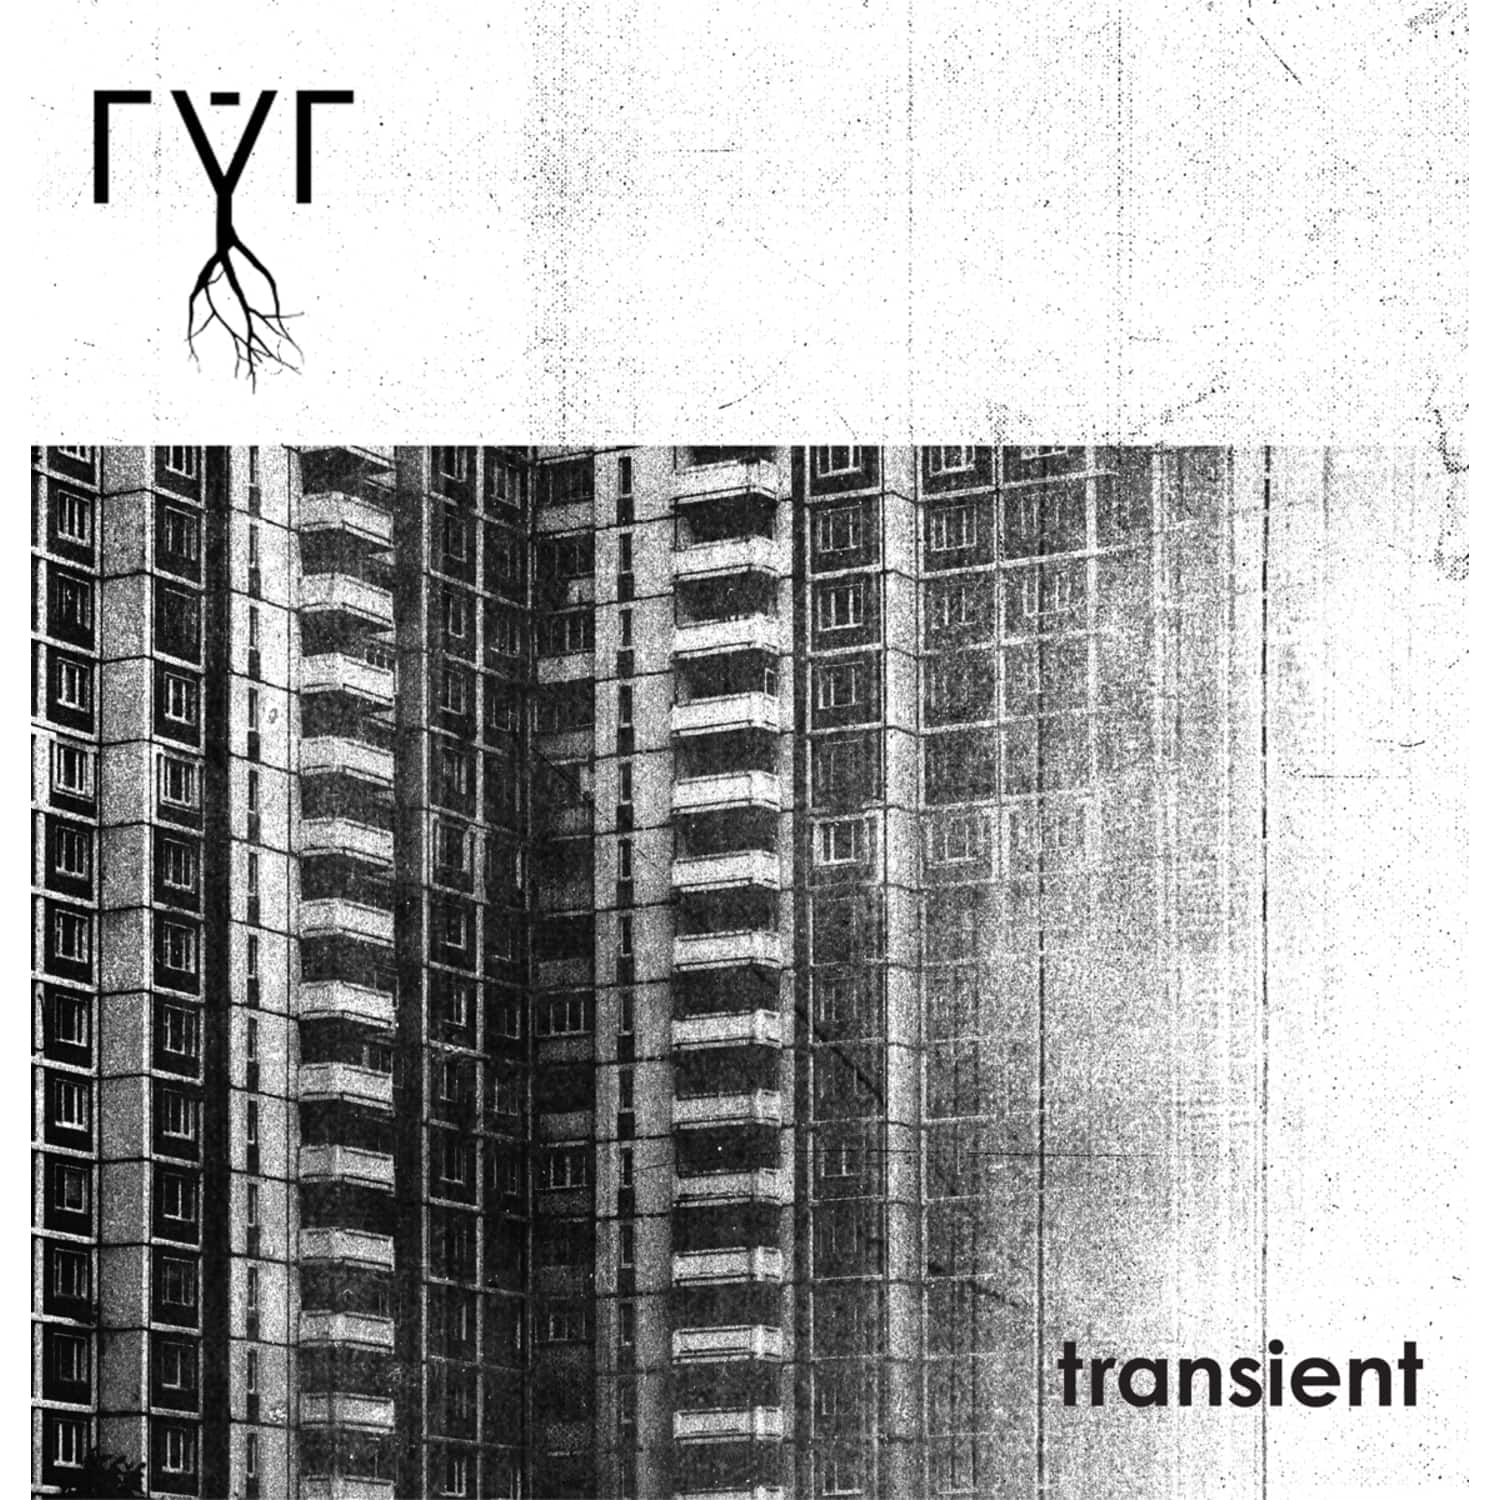 RYR - TRANSIENT 